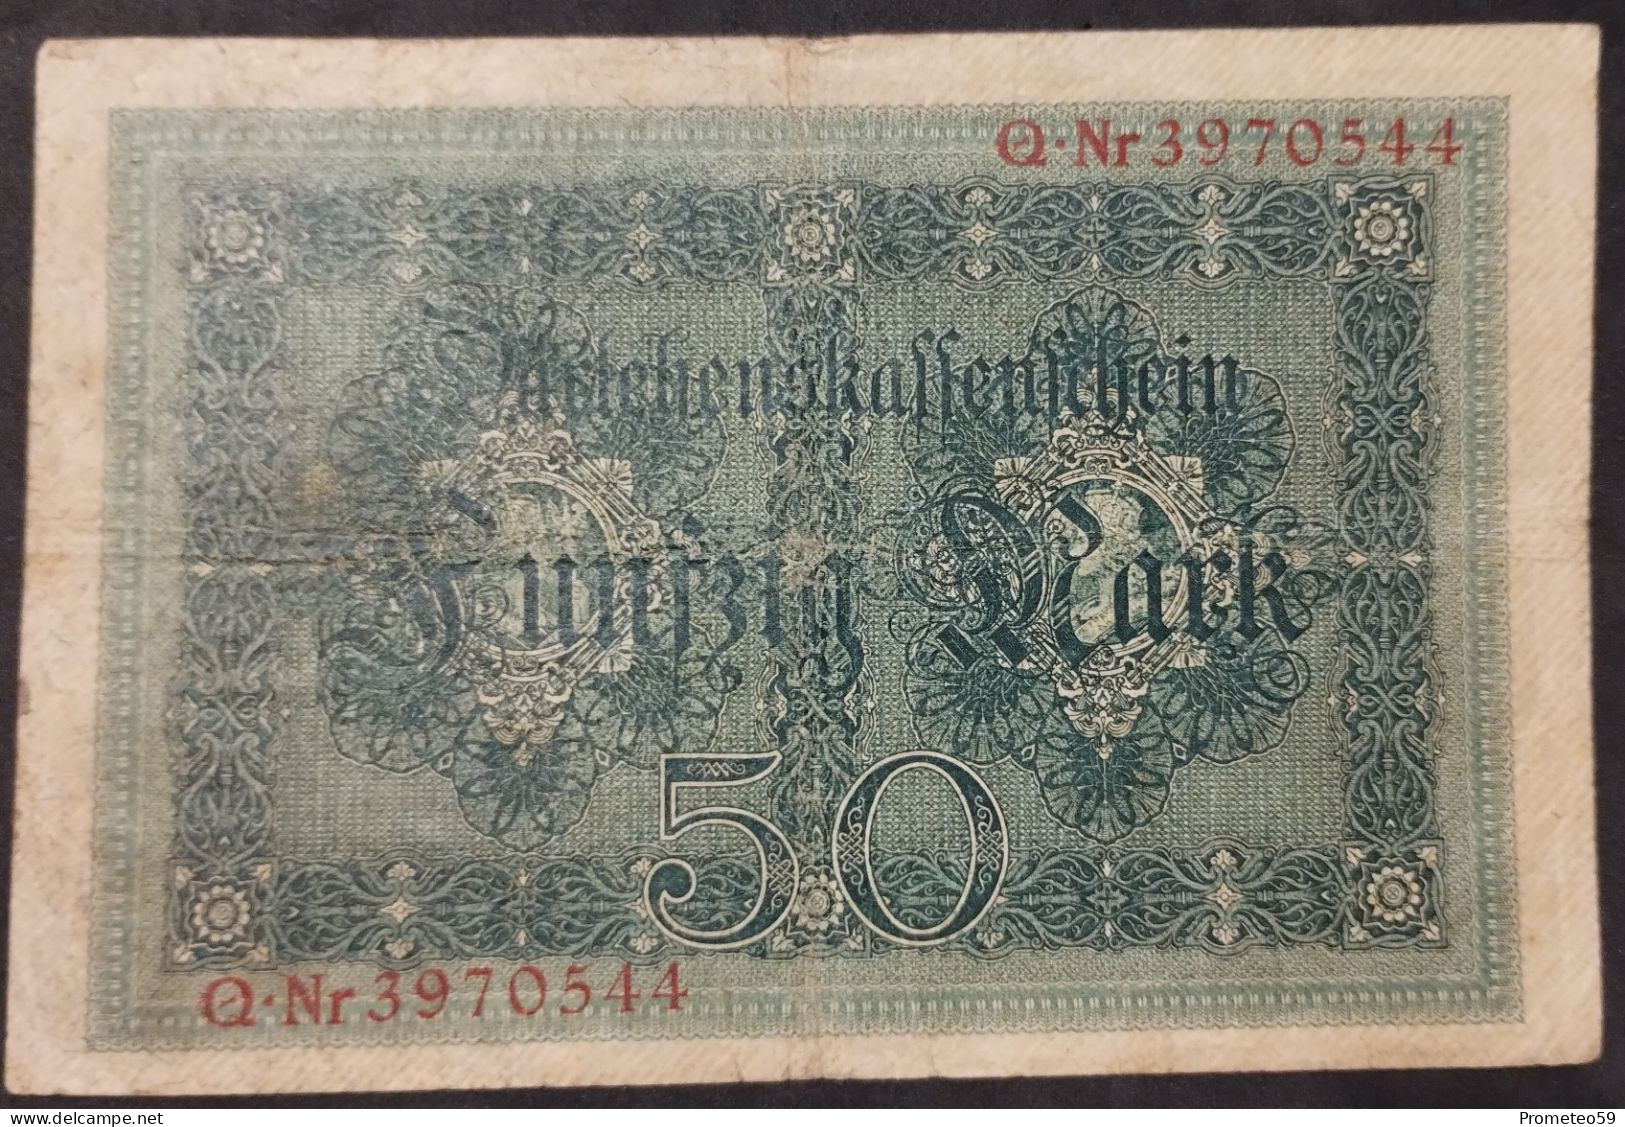 Alemania (Germany) – Billete Banknote De 50 Mark – 5.8.1914 – Serie De 7 Números - 50 Mark